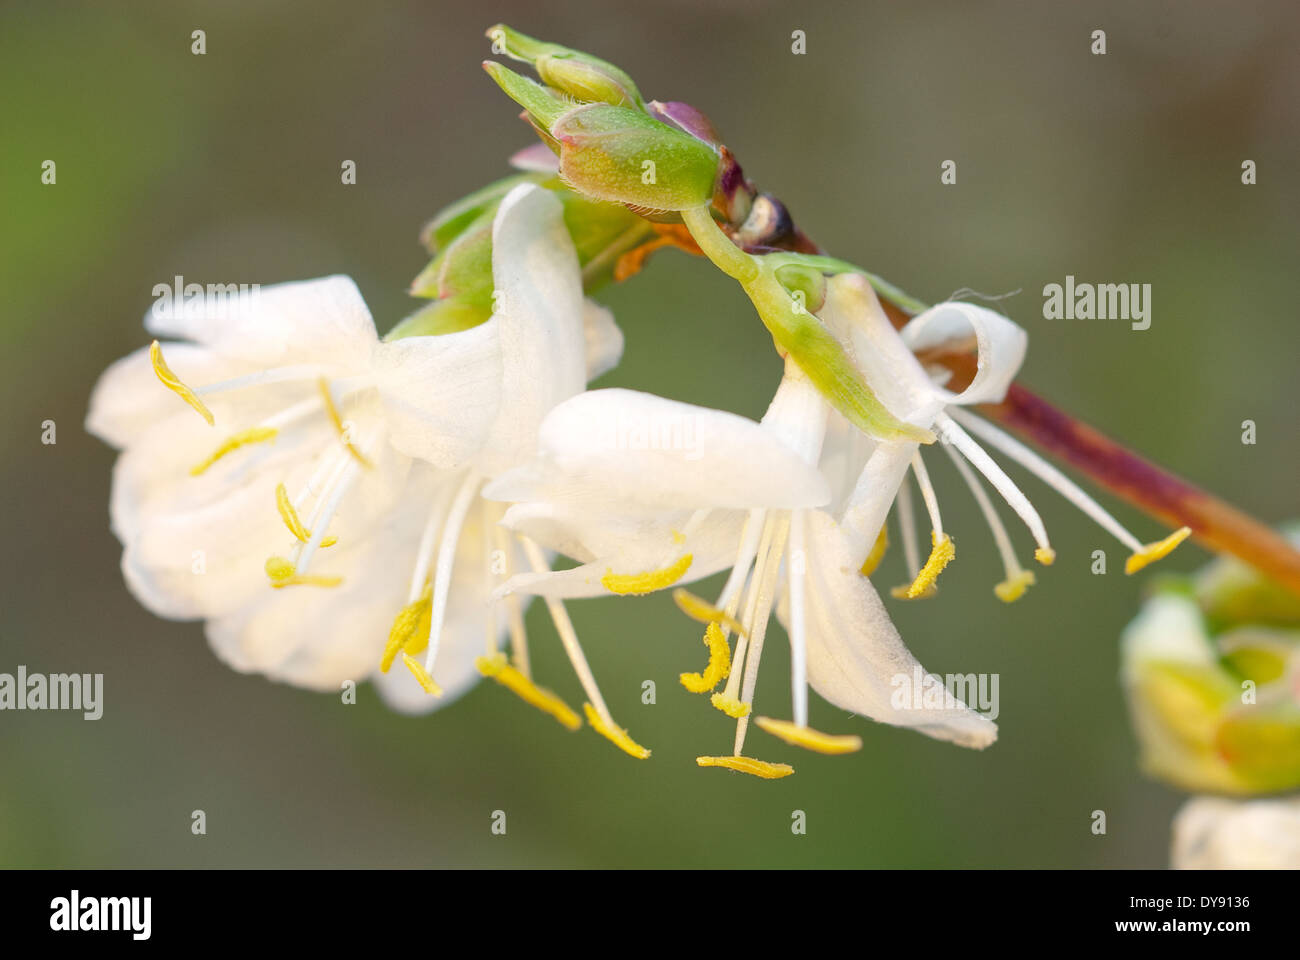 Lonicera 'Standishii', Winter Honeysuckle. December, Shrub. White scented flowers. Stock Photo